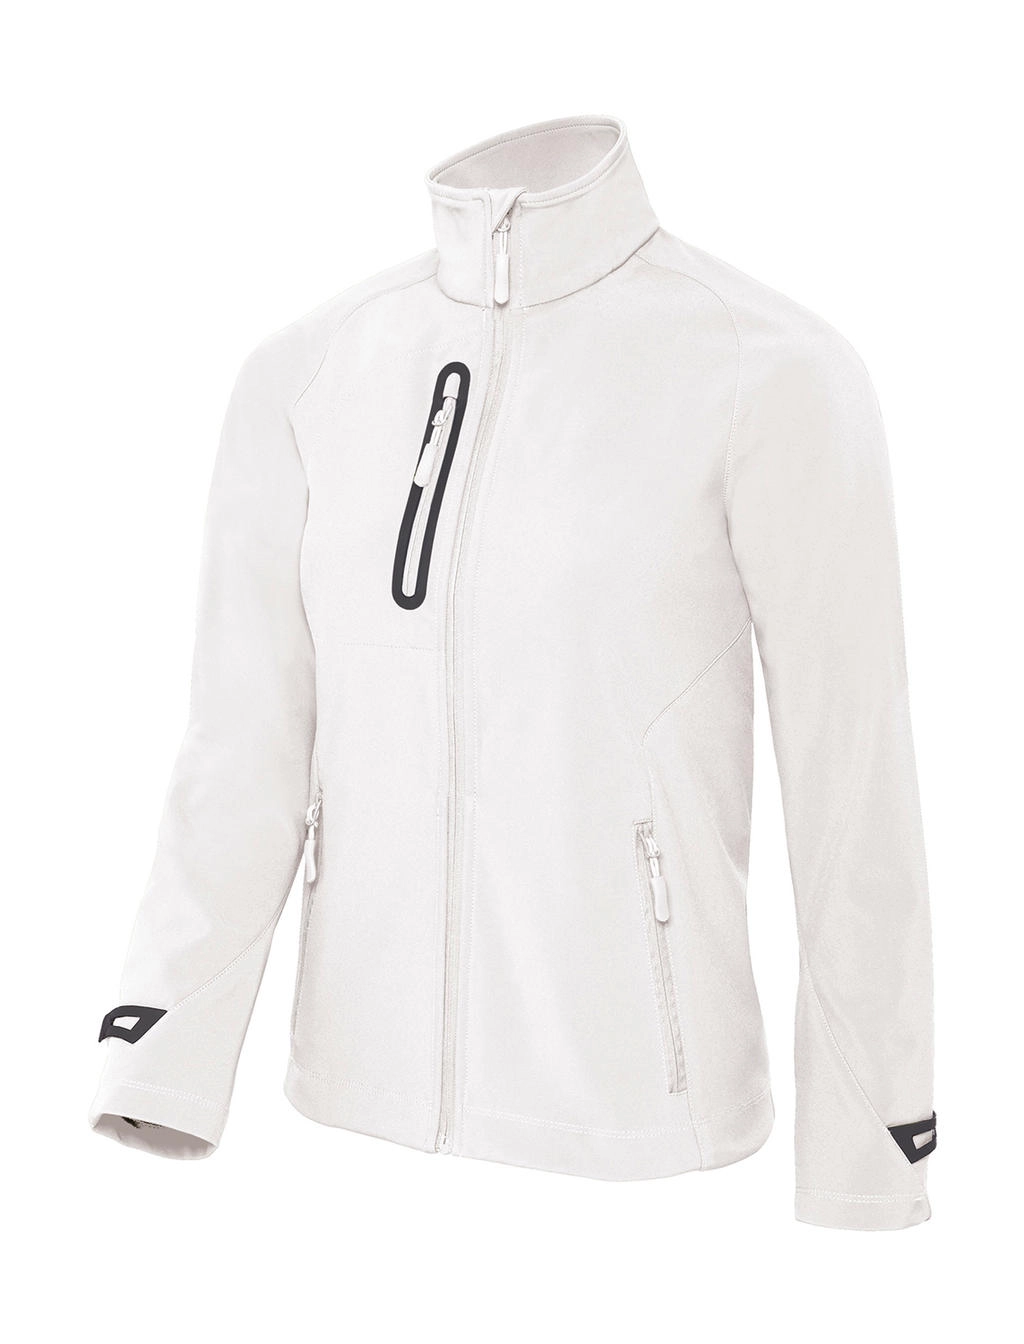 X-Lite Softshell/women Jacket zum Besticken und Bedrucken in der Farbe White mit Ihren Logo, Schriftzug oder Motiv.